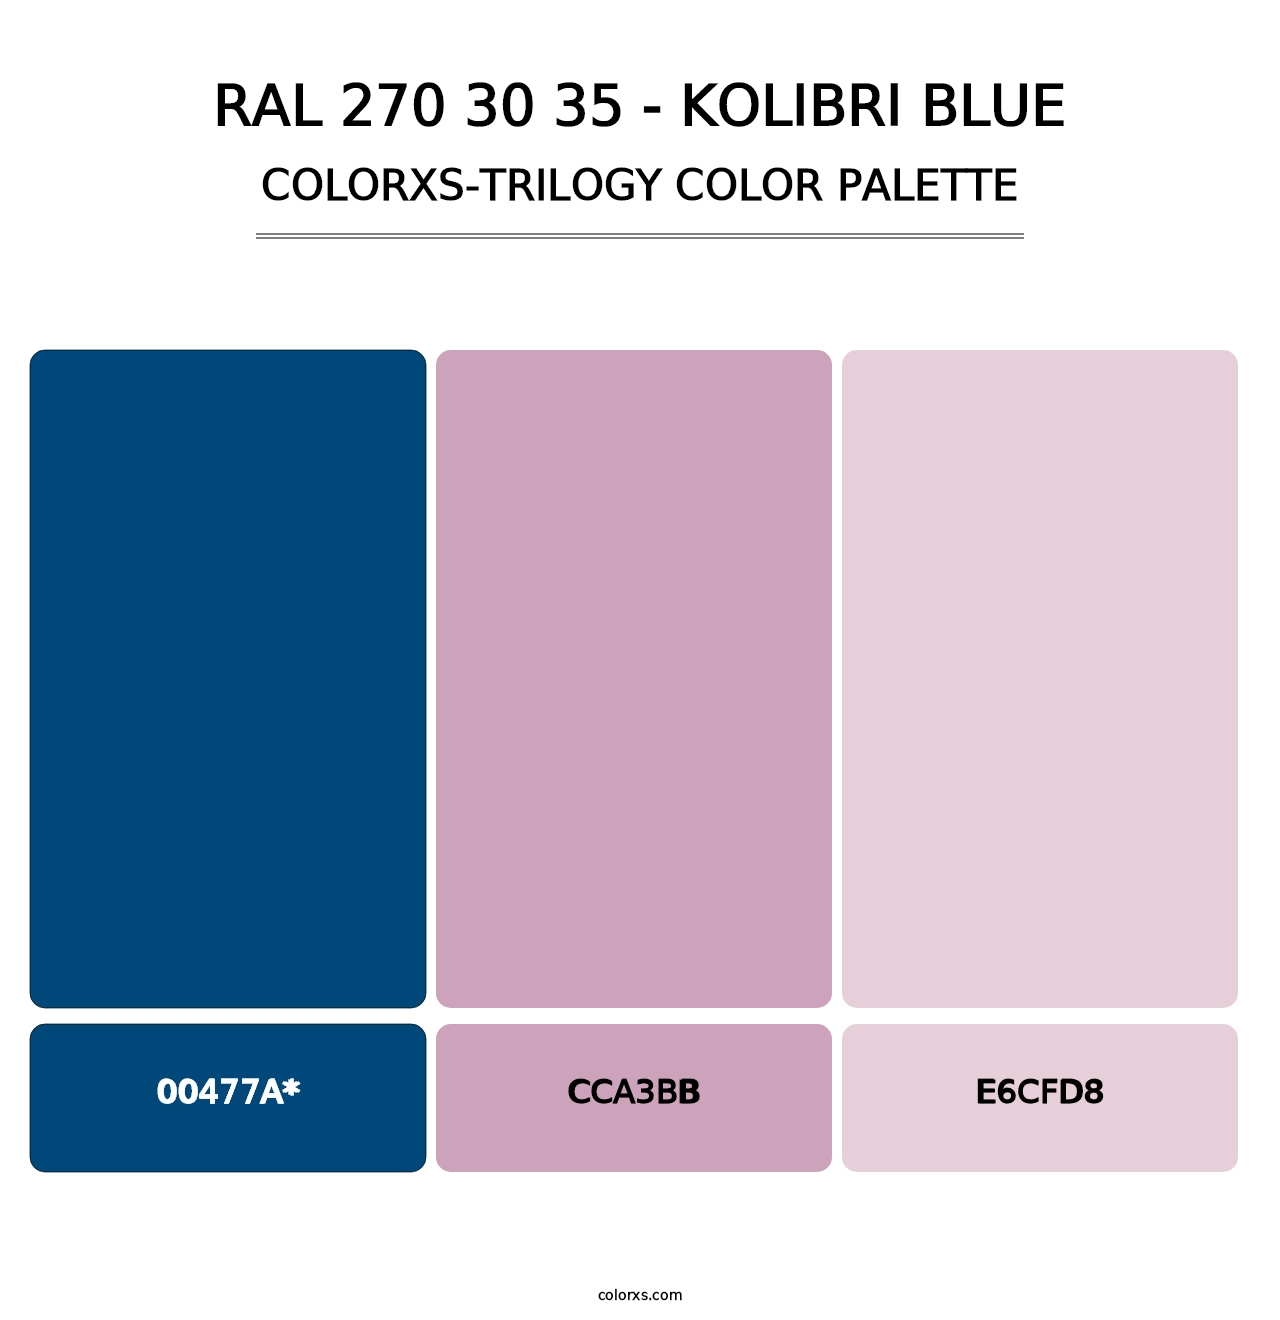 RAL 270 30 35 - Kolibri Blue - Colorxs Trilogy Palette